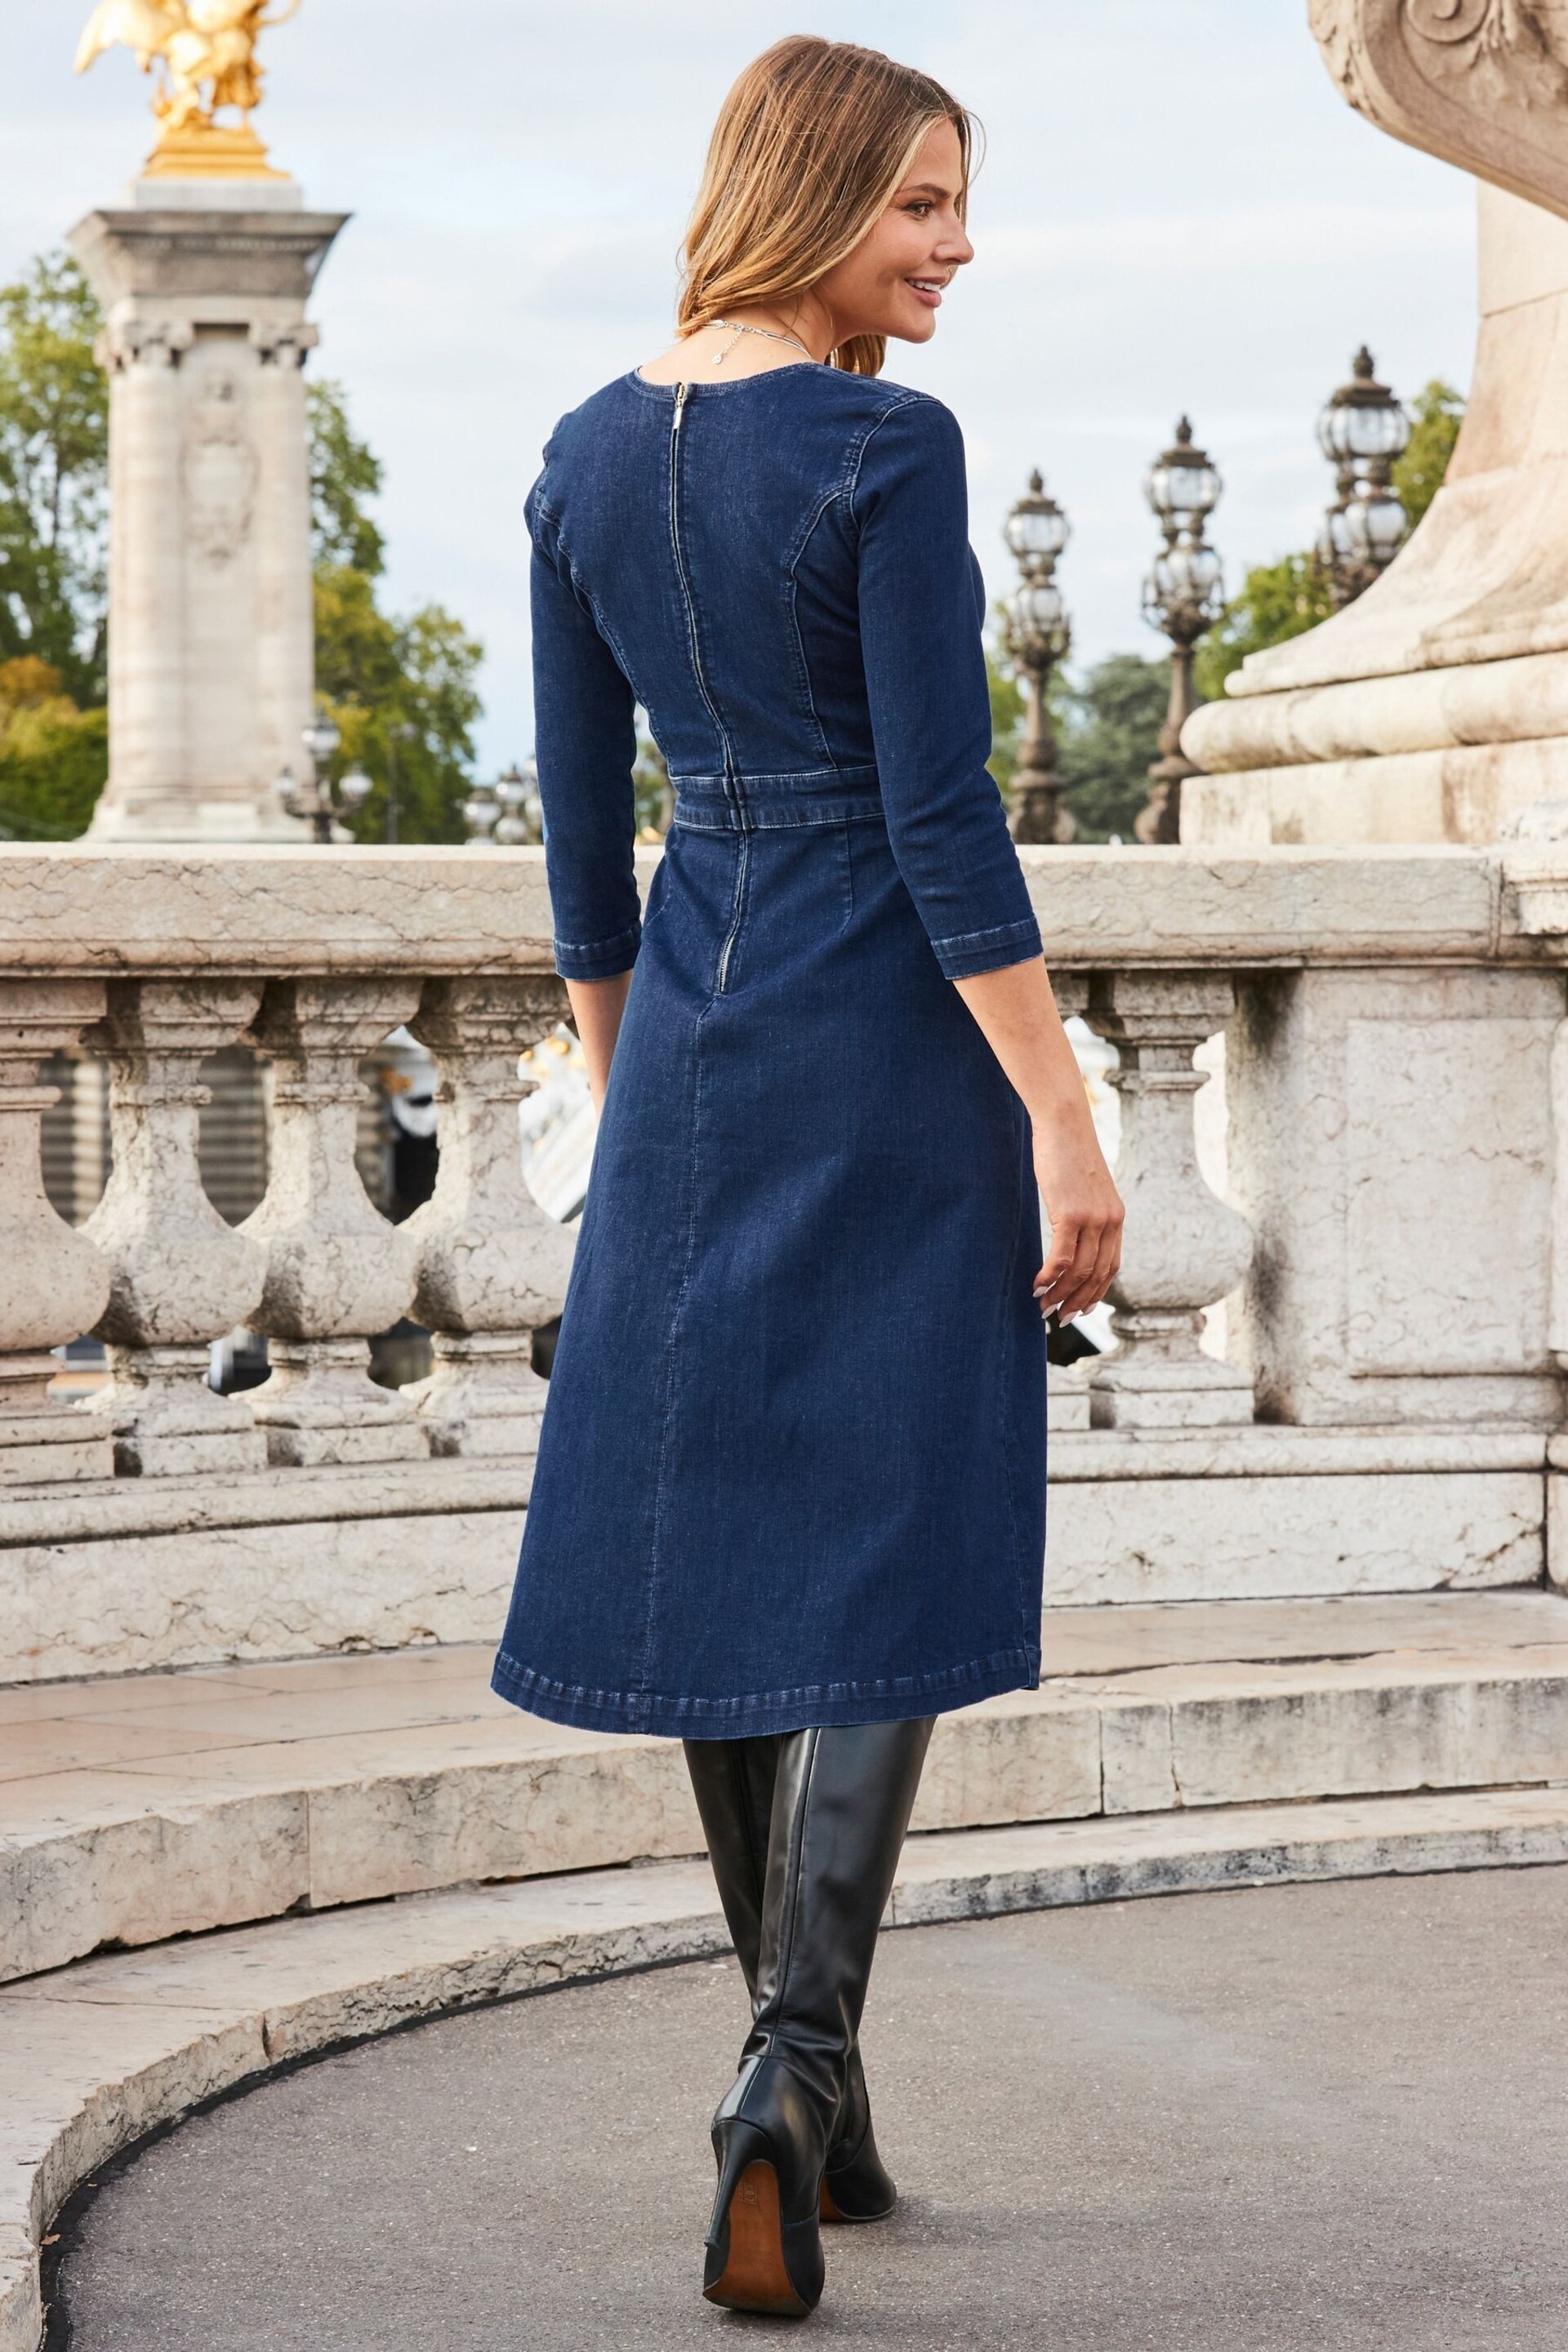 Sosandar Blue Fit & Flare Denim Dress - Image 2 of 5